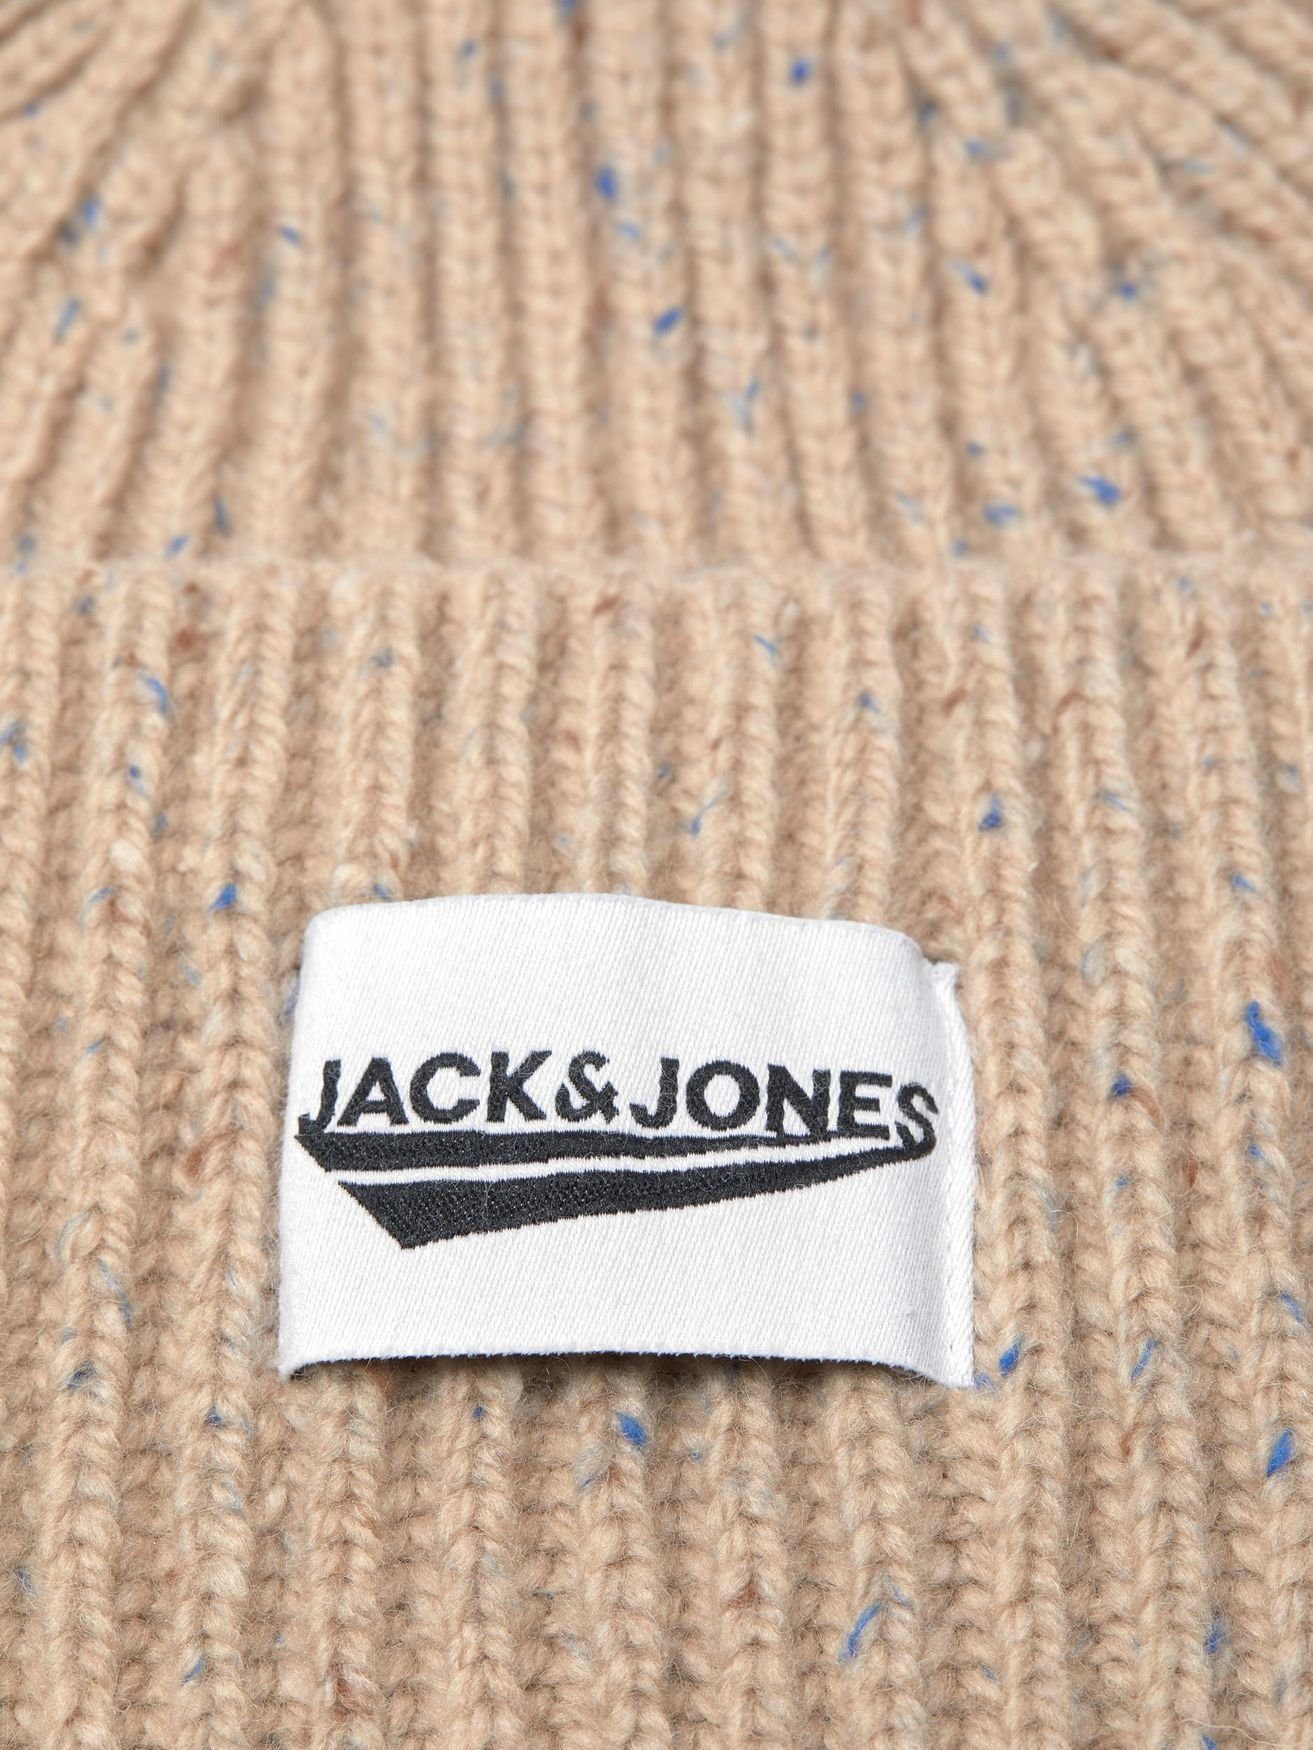 Gerippte Winter JACIVAR 4674 & Jones Beige in Beanie Kopfbedeckung Mütze Strickmütze Jack